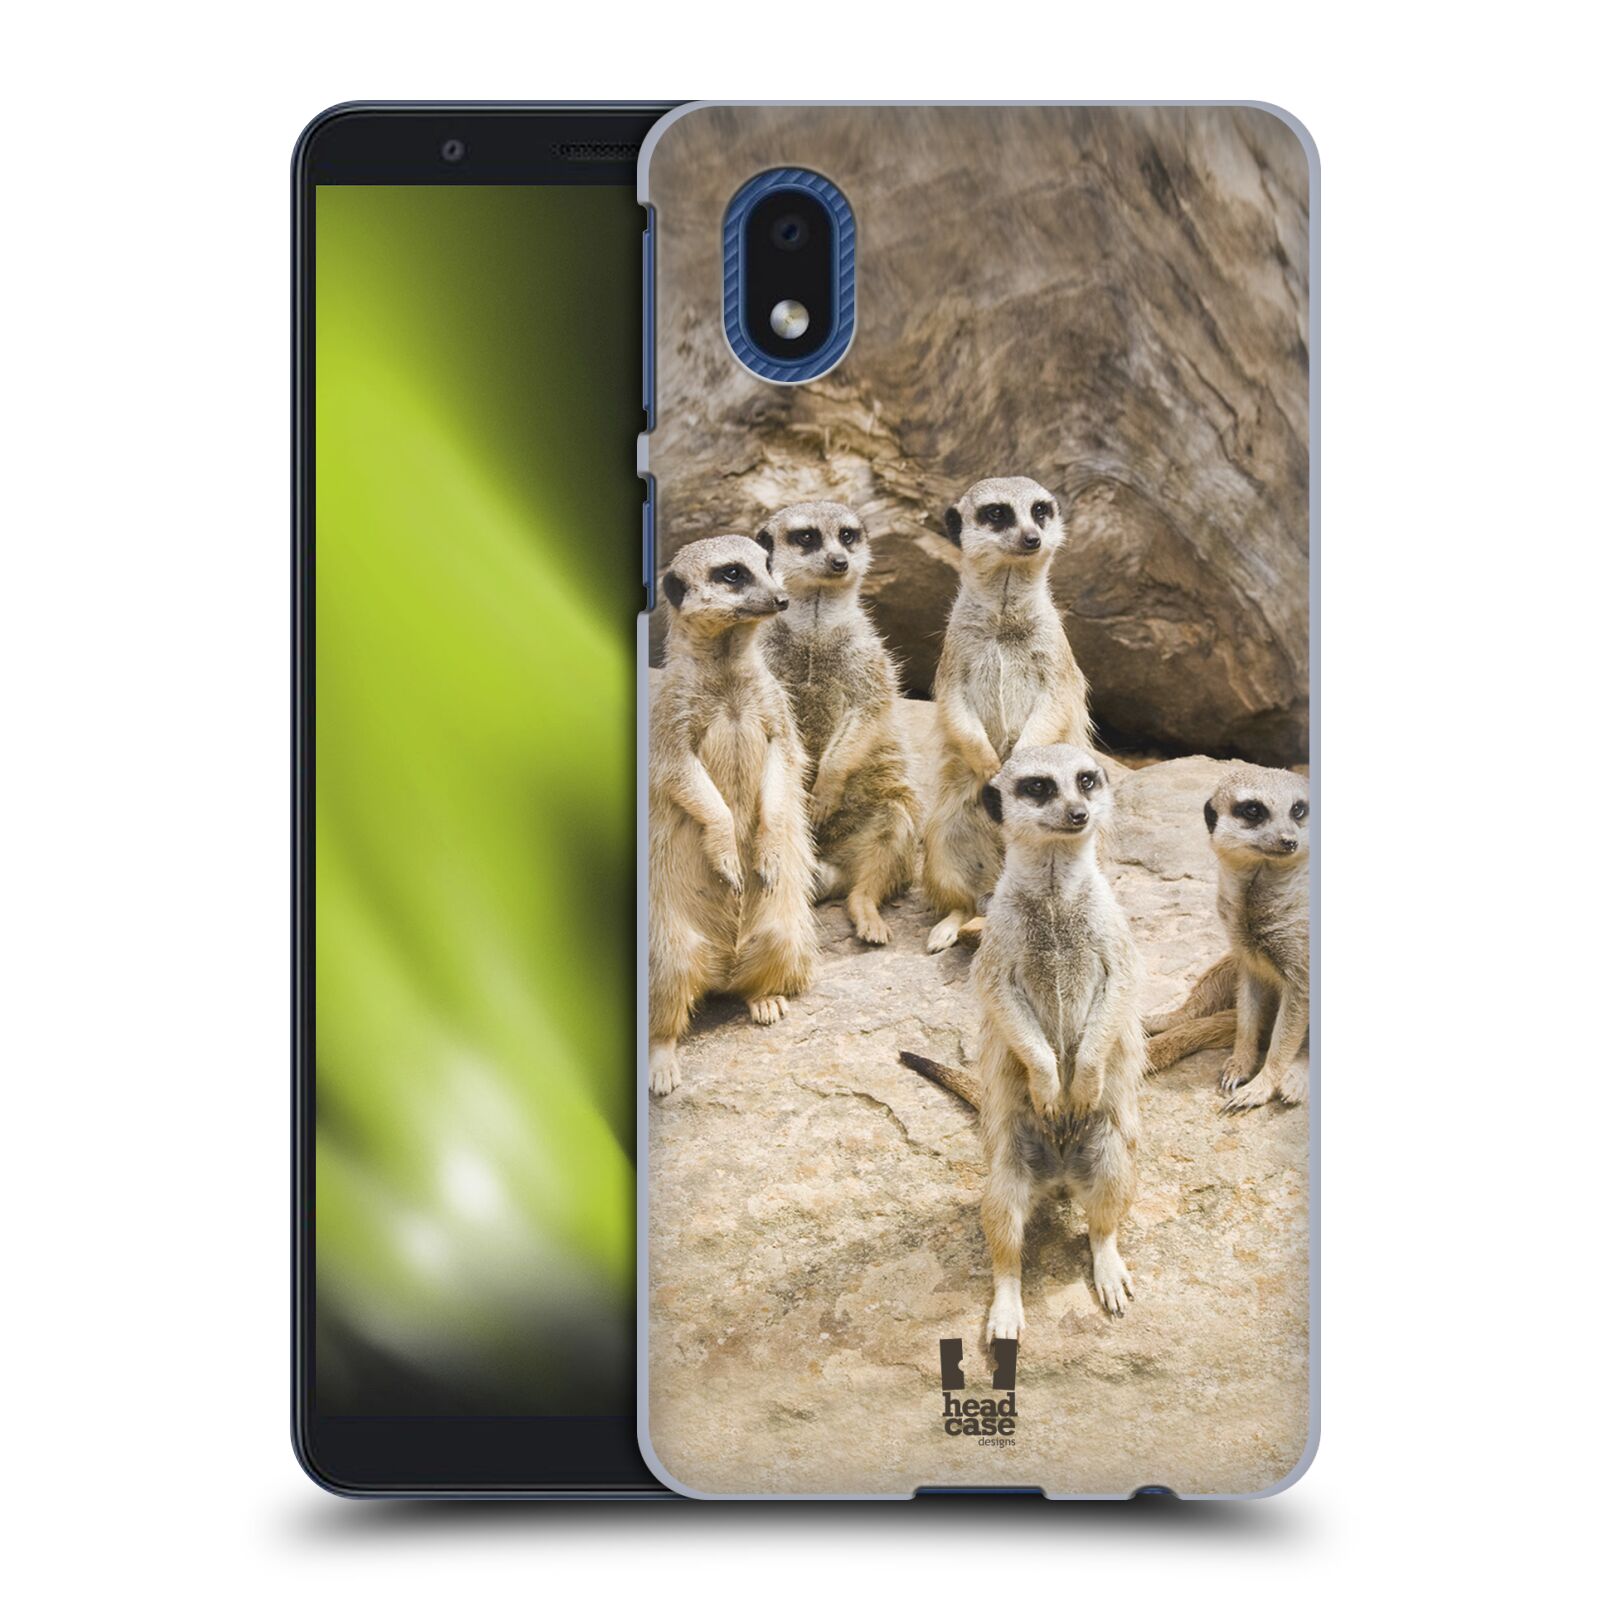 Zadní obal pro mobil Samsung Galaxy A01 CORE - HEAD CASE - Svět zvířat roztomilé surikaty